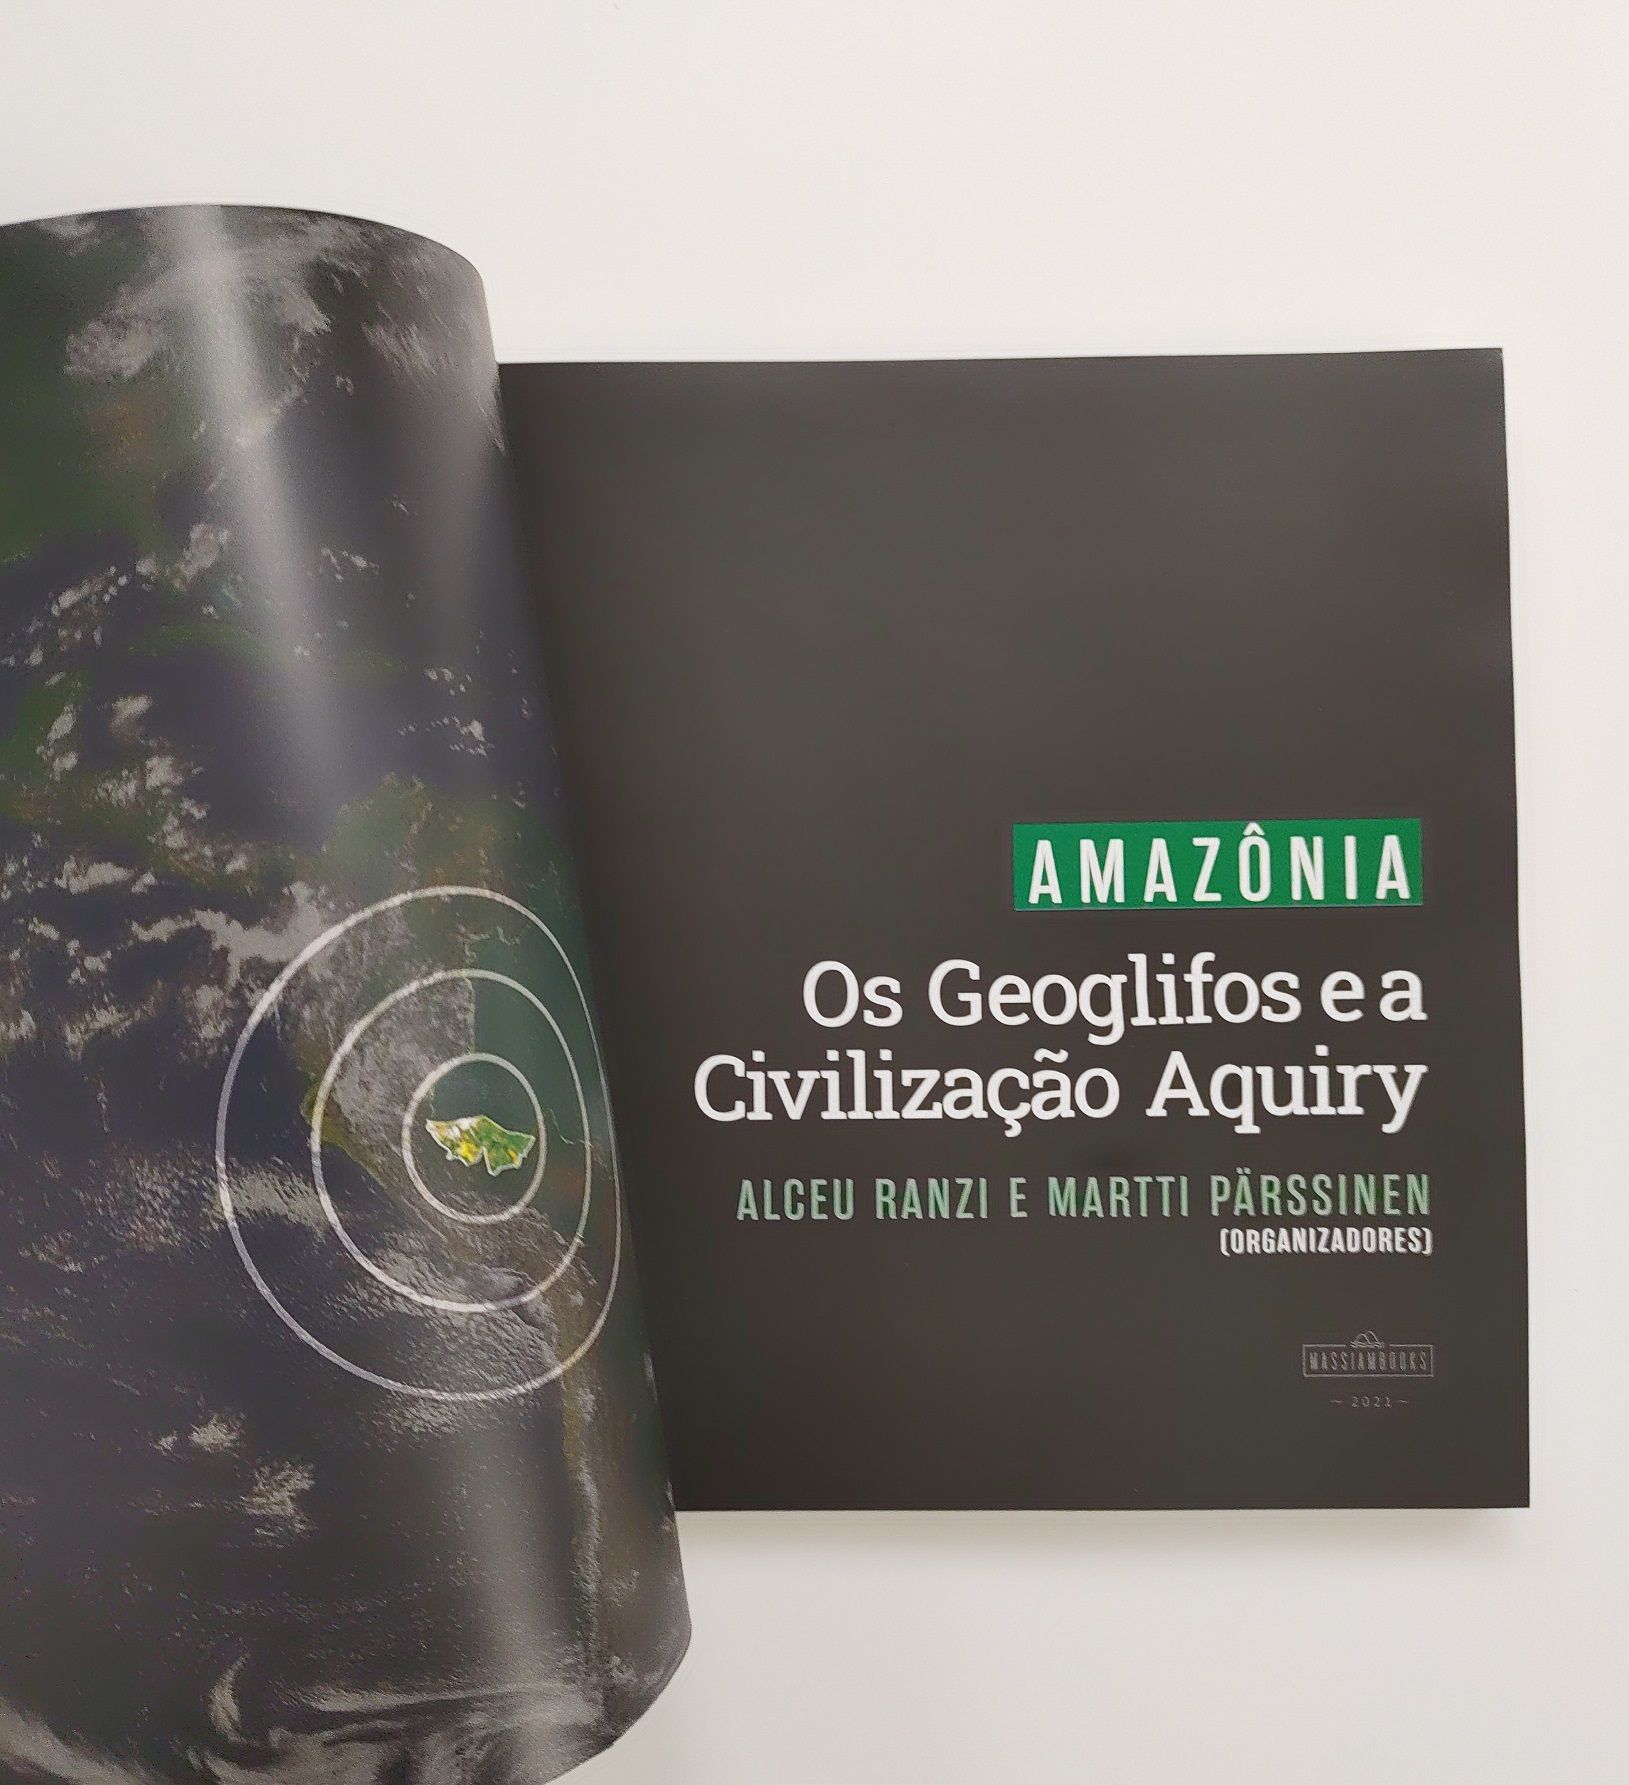 primera página del libro Amazonia